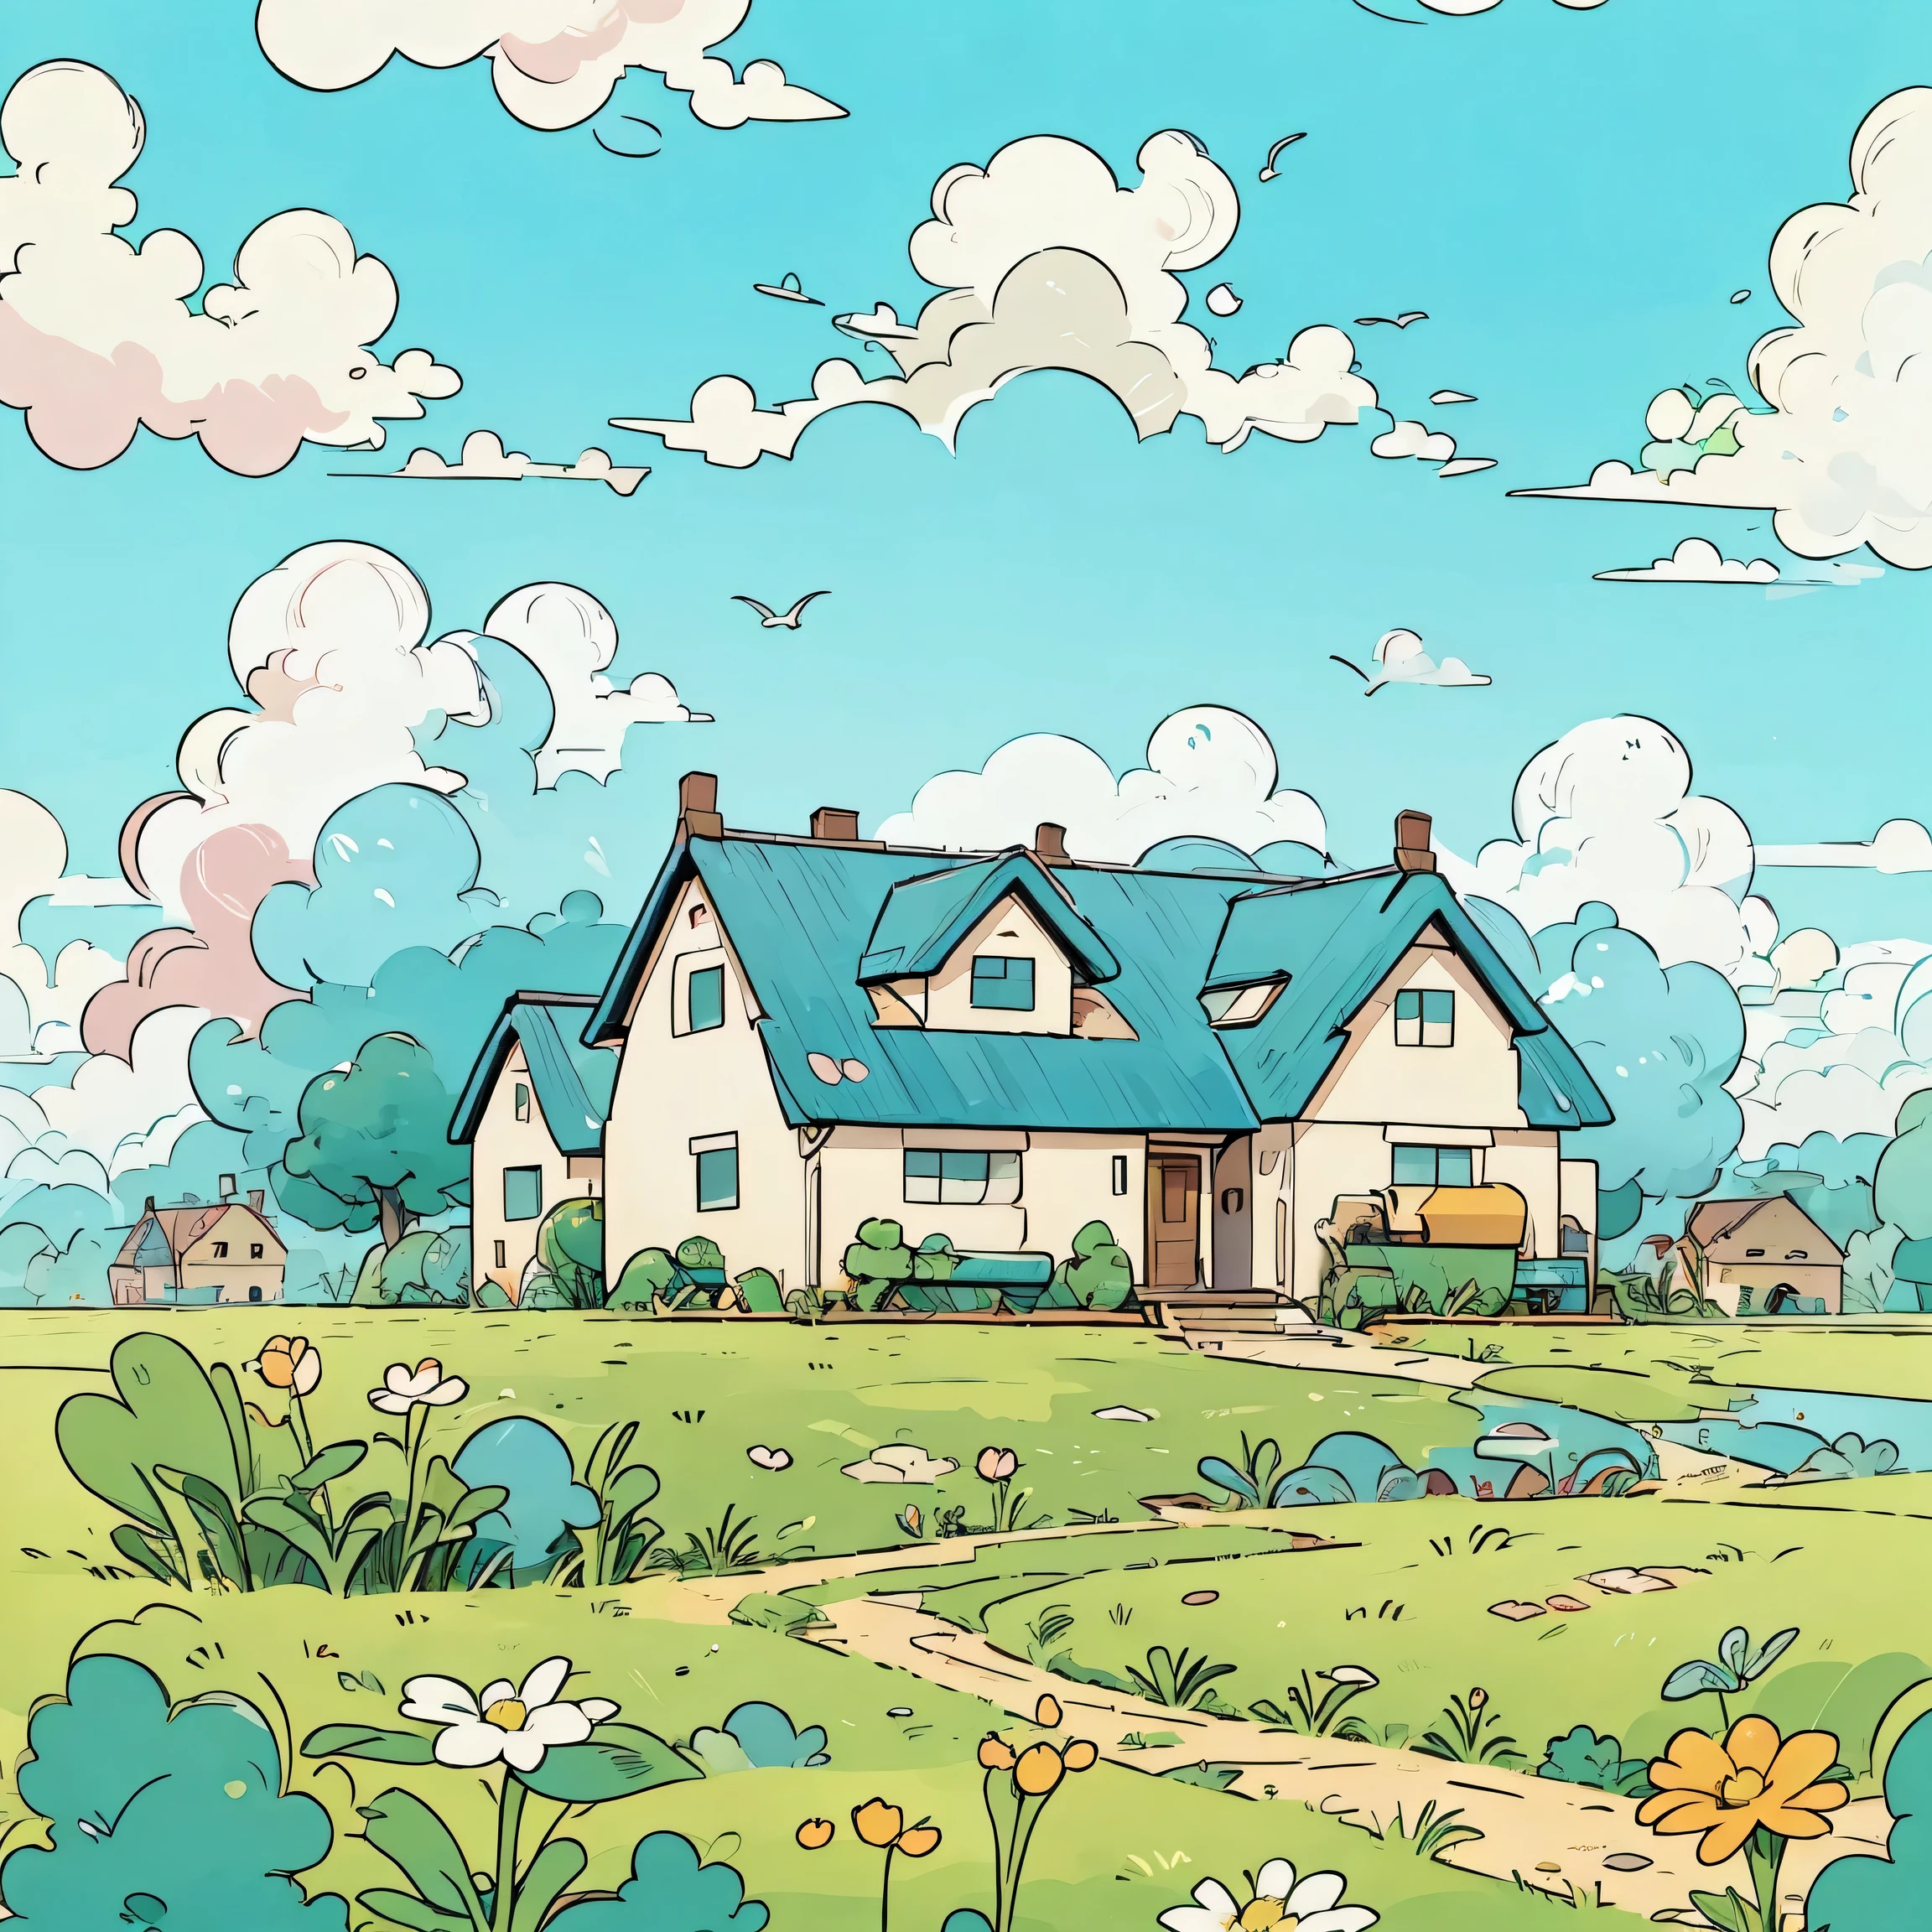 Blume，Himmel，Haus，grassland，
sanfte, warme Farben，
Glatte Linien，
einfacher Stil，
unbegrenzte Farbpalette，
flacher Anime-Stil，